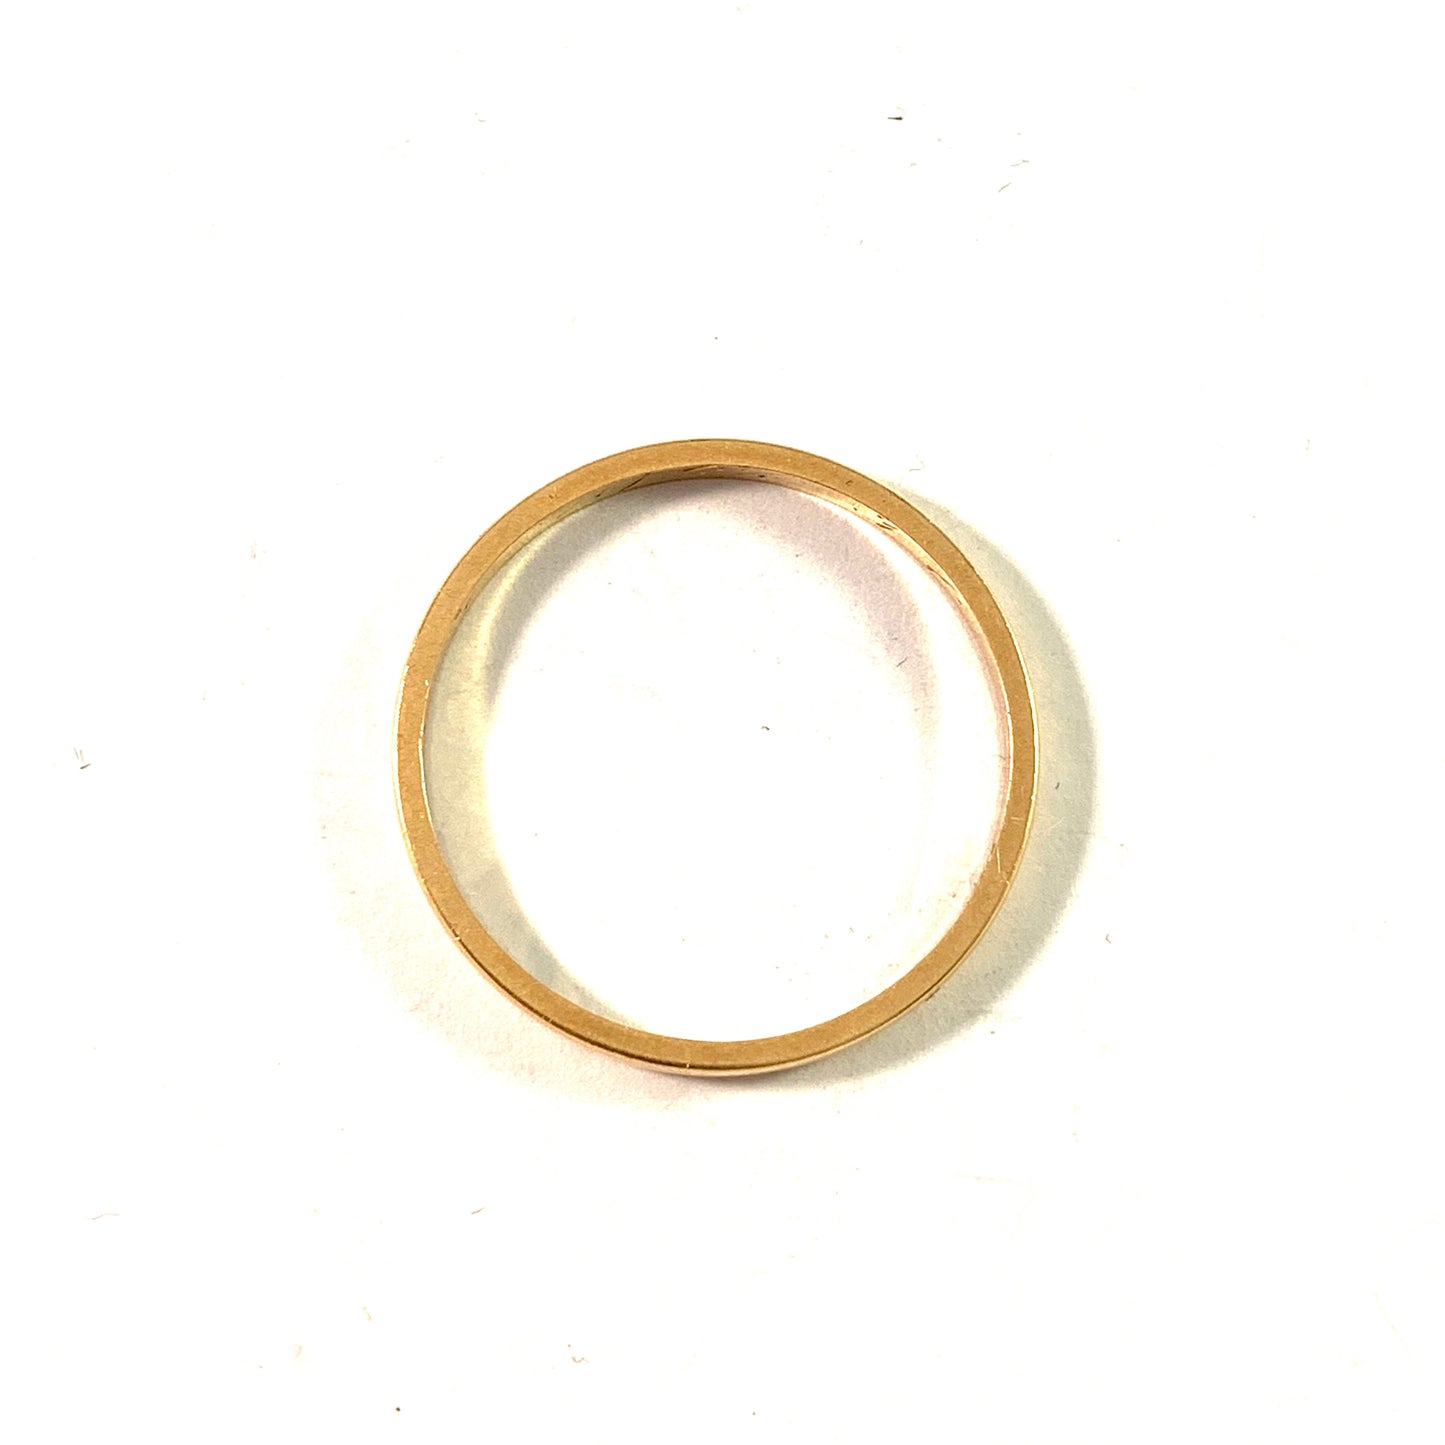 Lefrens, Sweden year 1934. Vintage 18k Gold Men's Wedding Band Ring. Size 10.